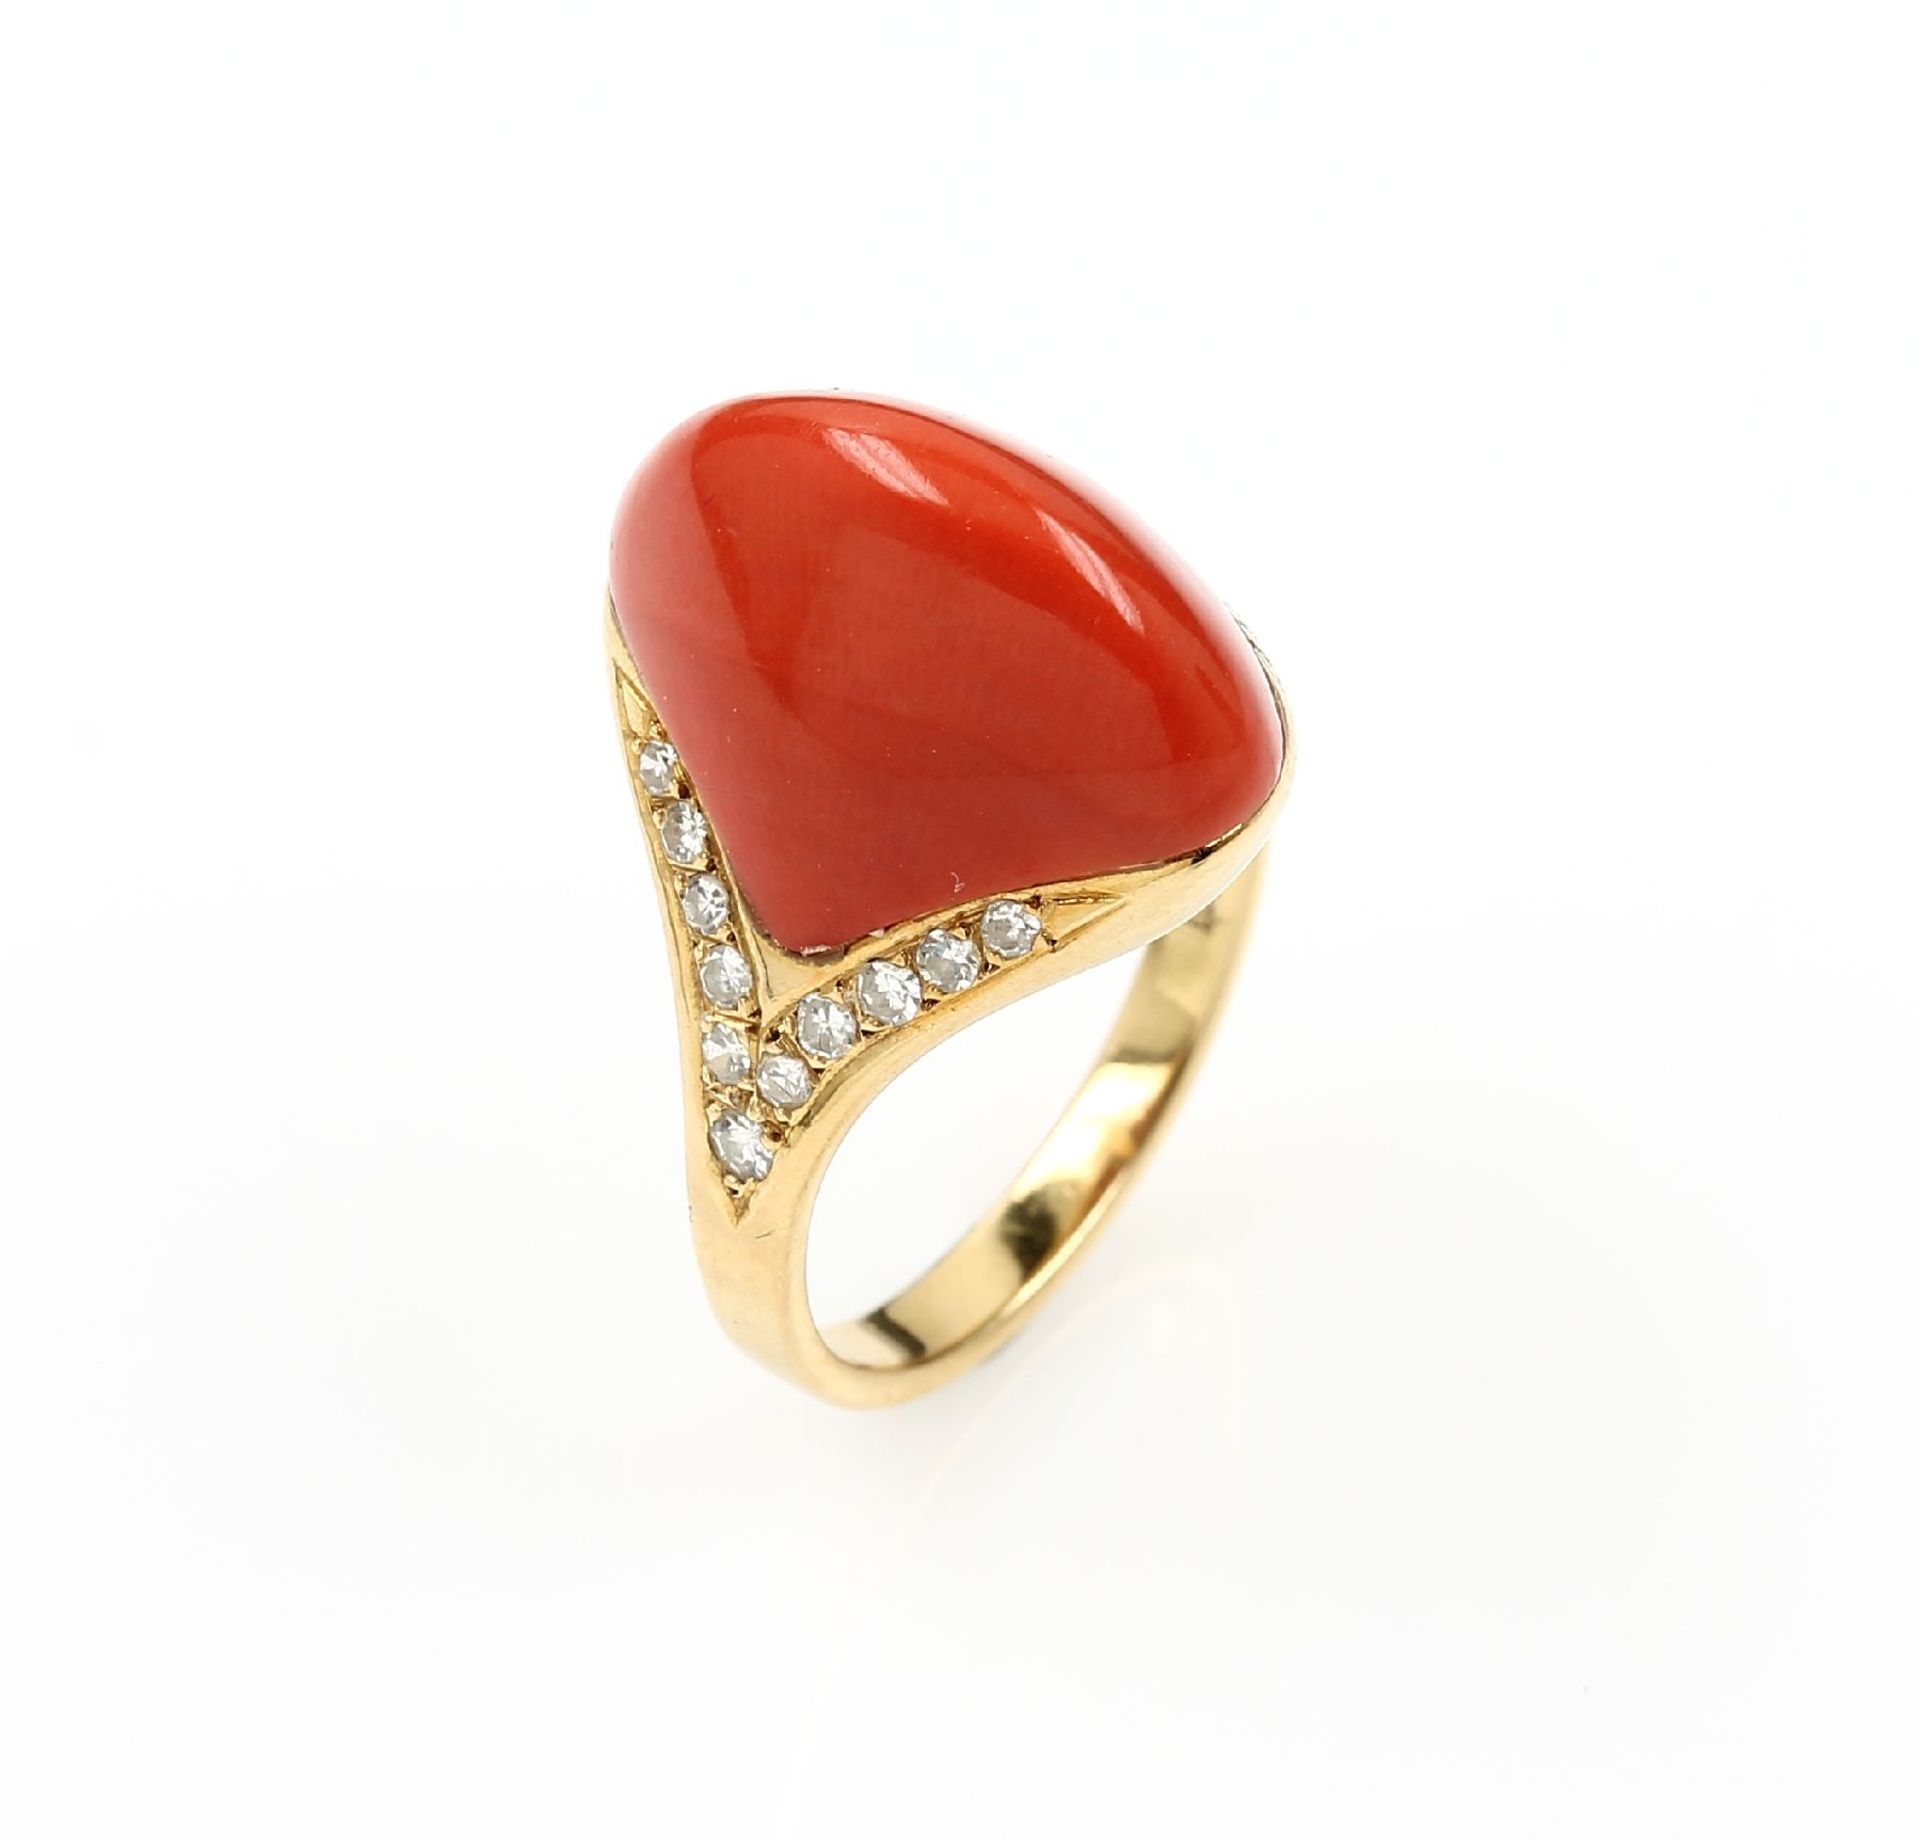 Ring mit Koralle und Diamanten, GG 750/000, hoher Korallencabochon von guter Farbe, 22 8/8-Diamanten